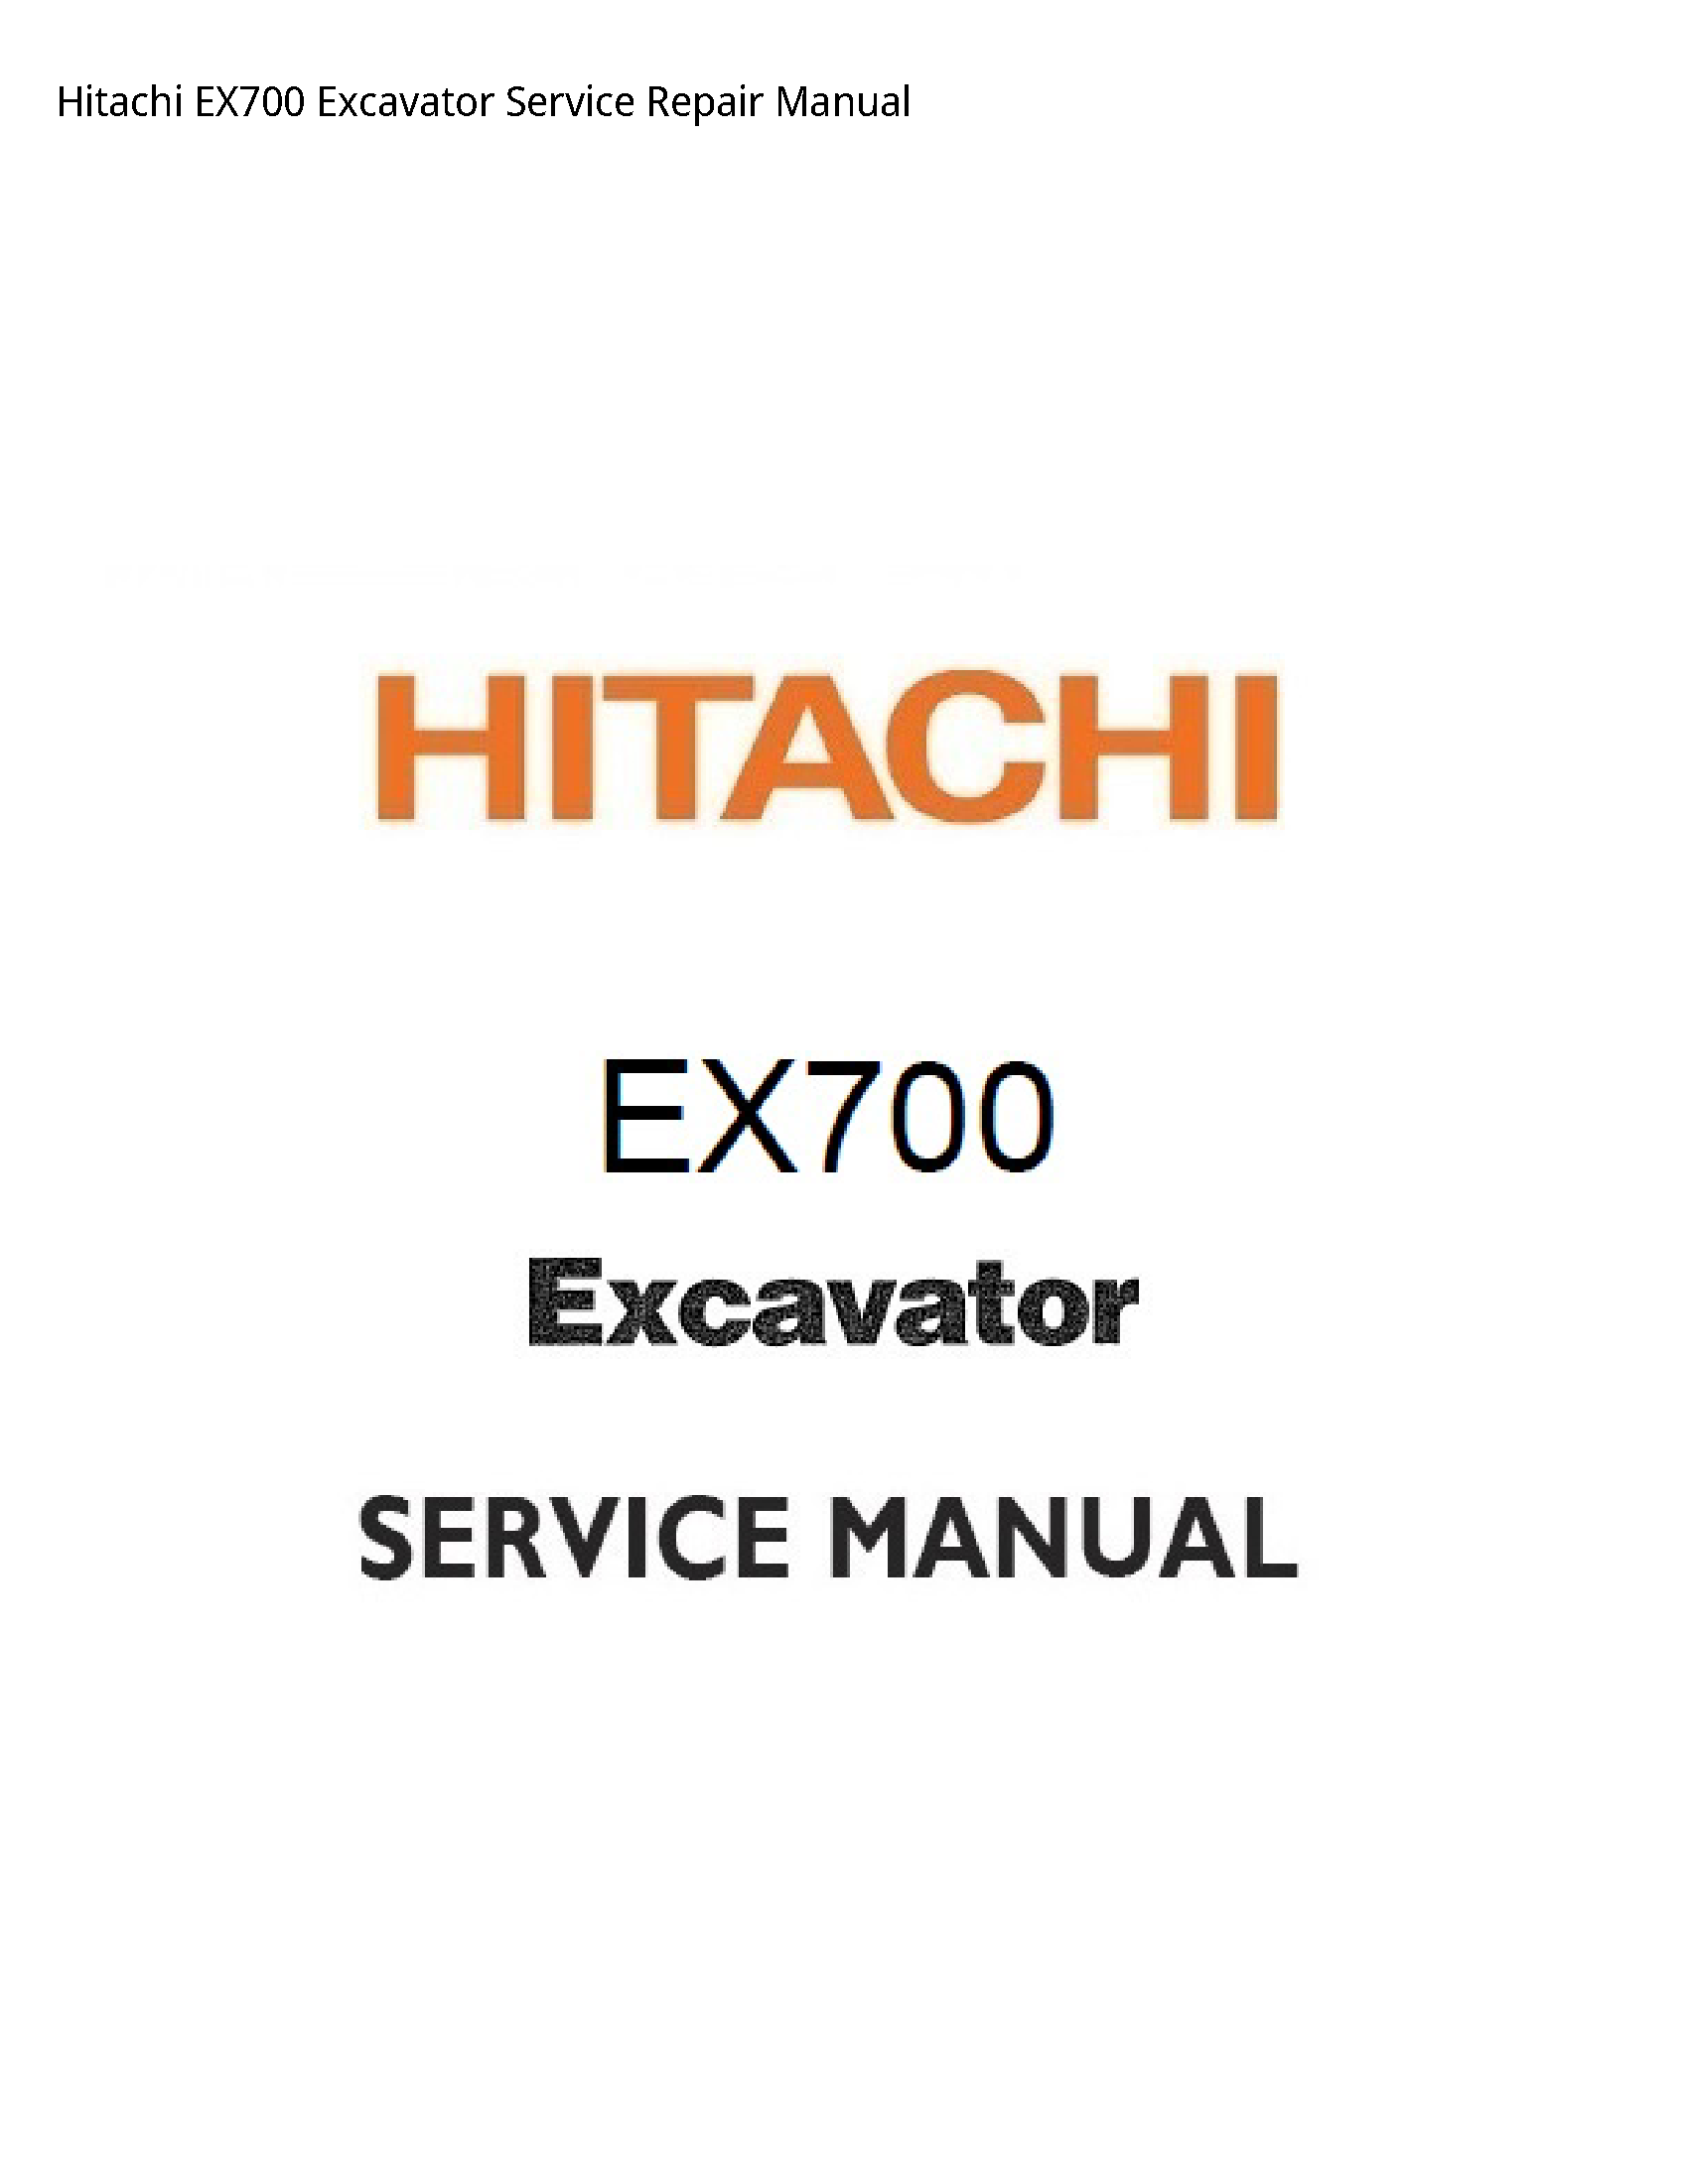 Hitachi EX700 Excavator manual